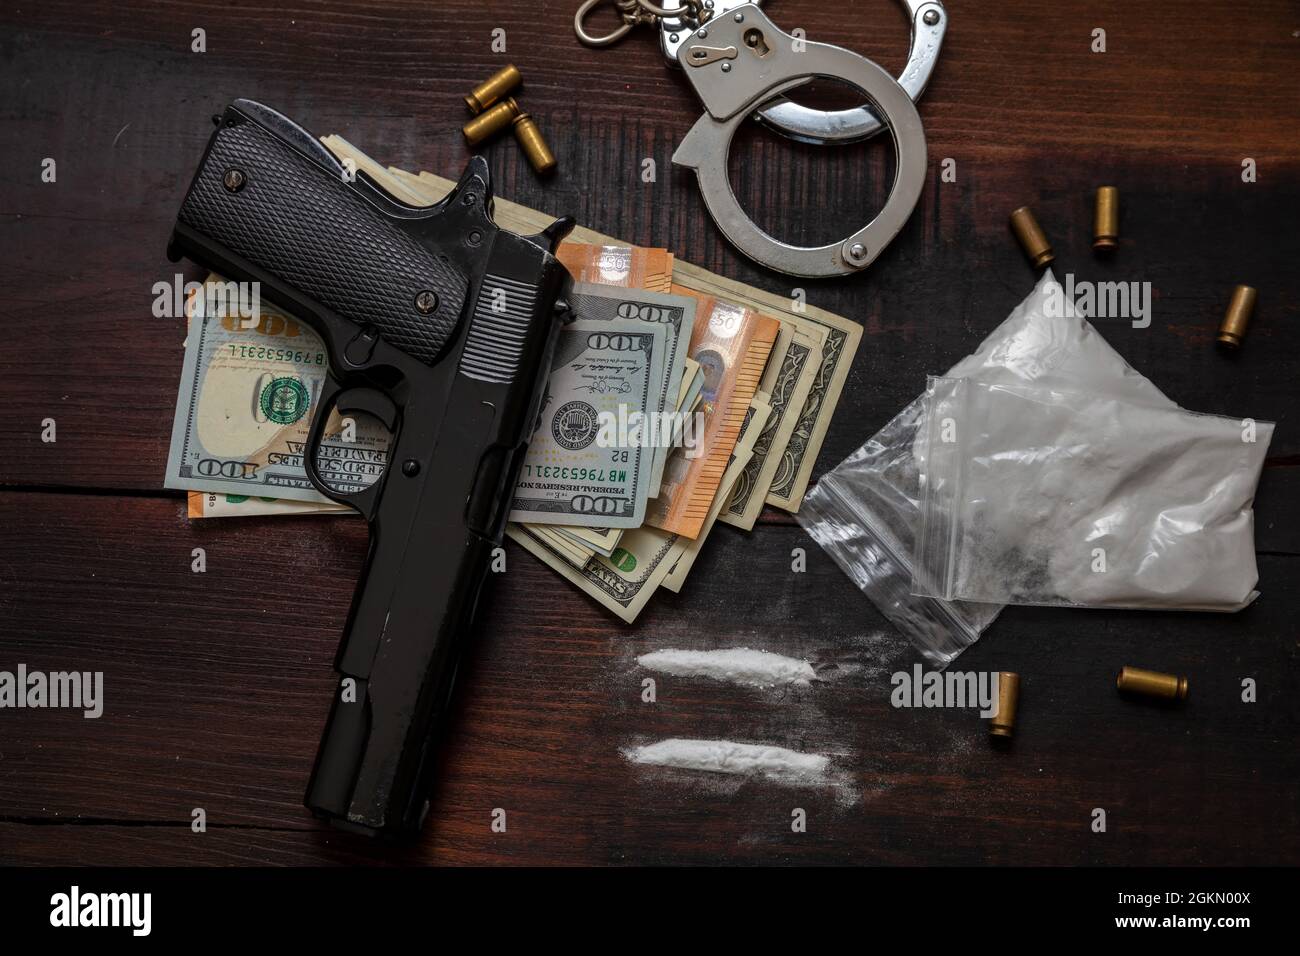 Handel mit illegalen Substanzen und Verhaftung. Handschellen, Pistolengeld und Kokainpakete auf Holztischhintergrund. Drogenschmuggel und -Handel überziehen Stockfoto